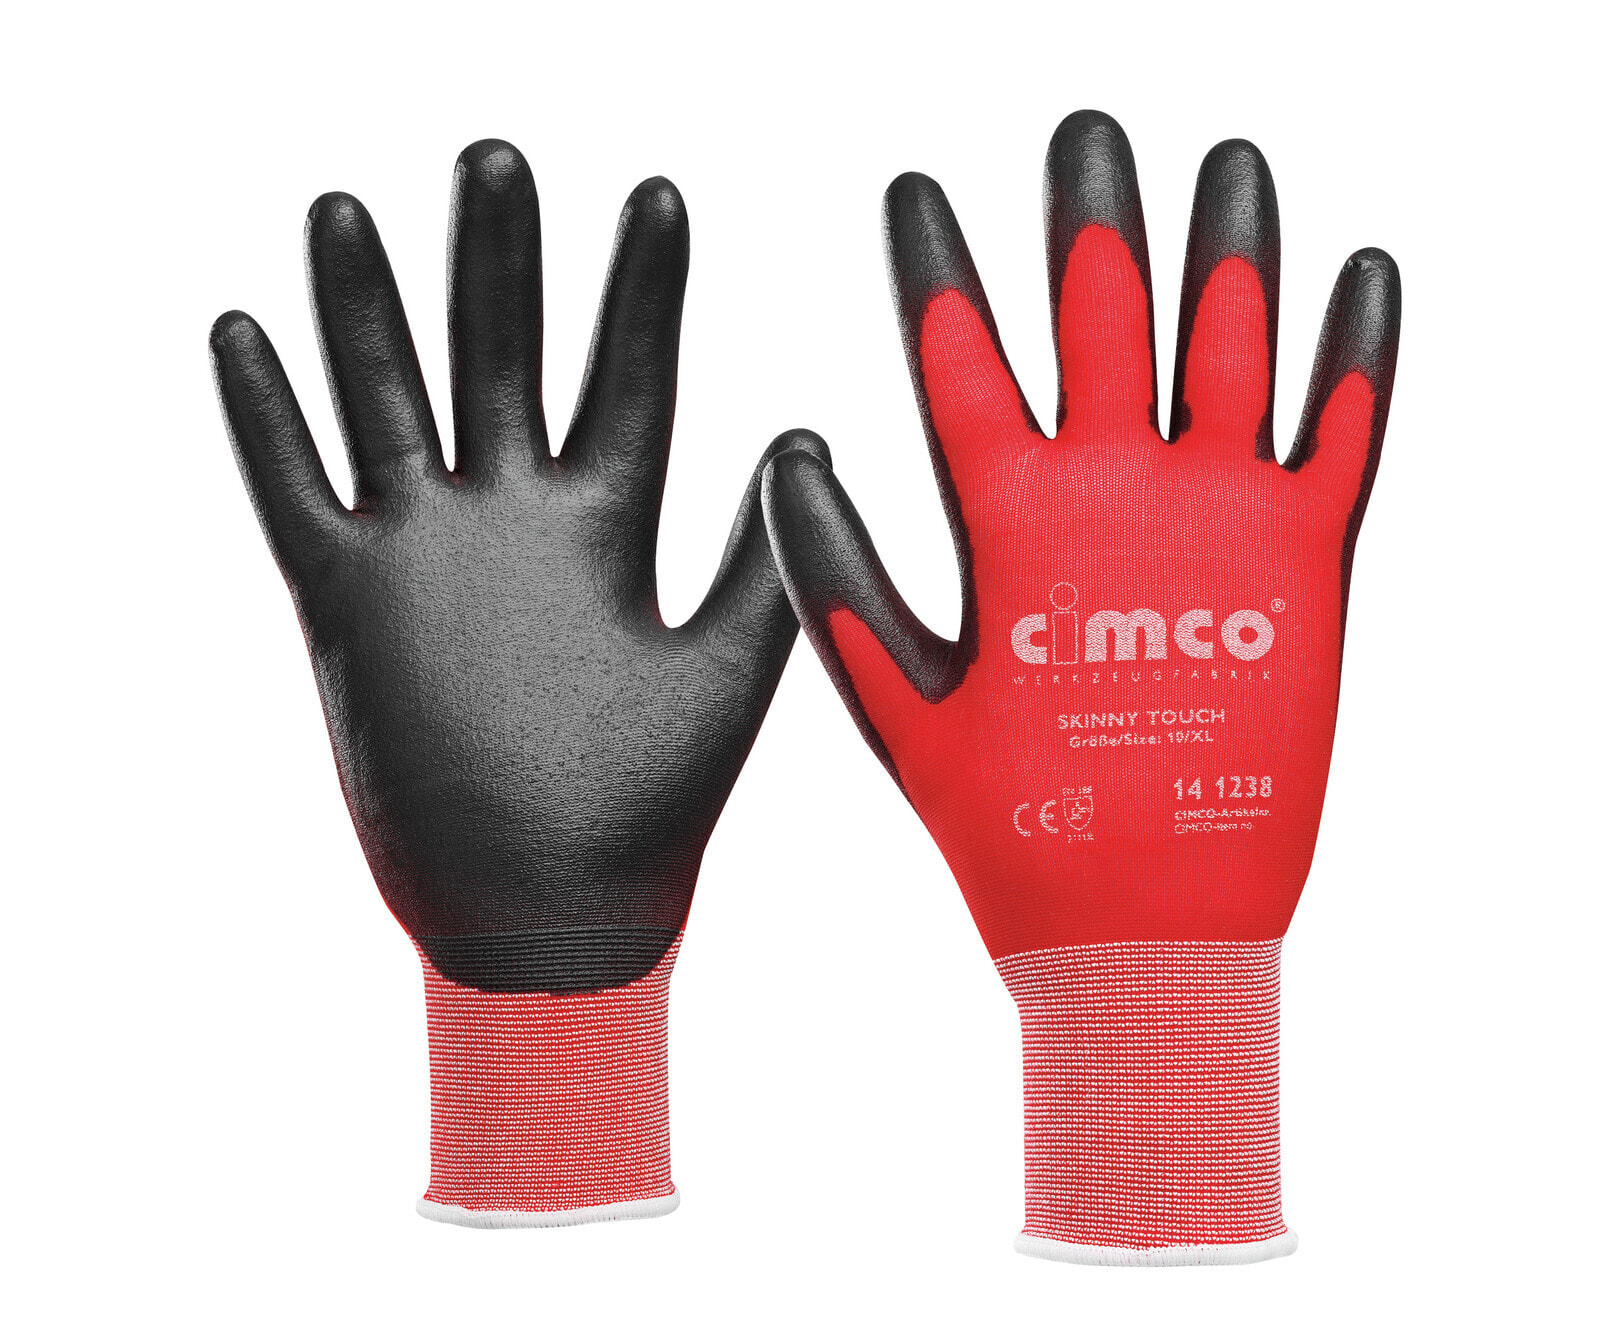 141235 - Workshop gloves - Black - Red - M - EUE - Adult - Unisex